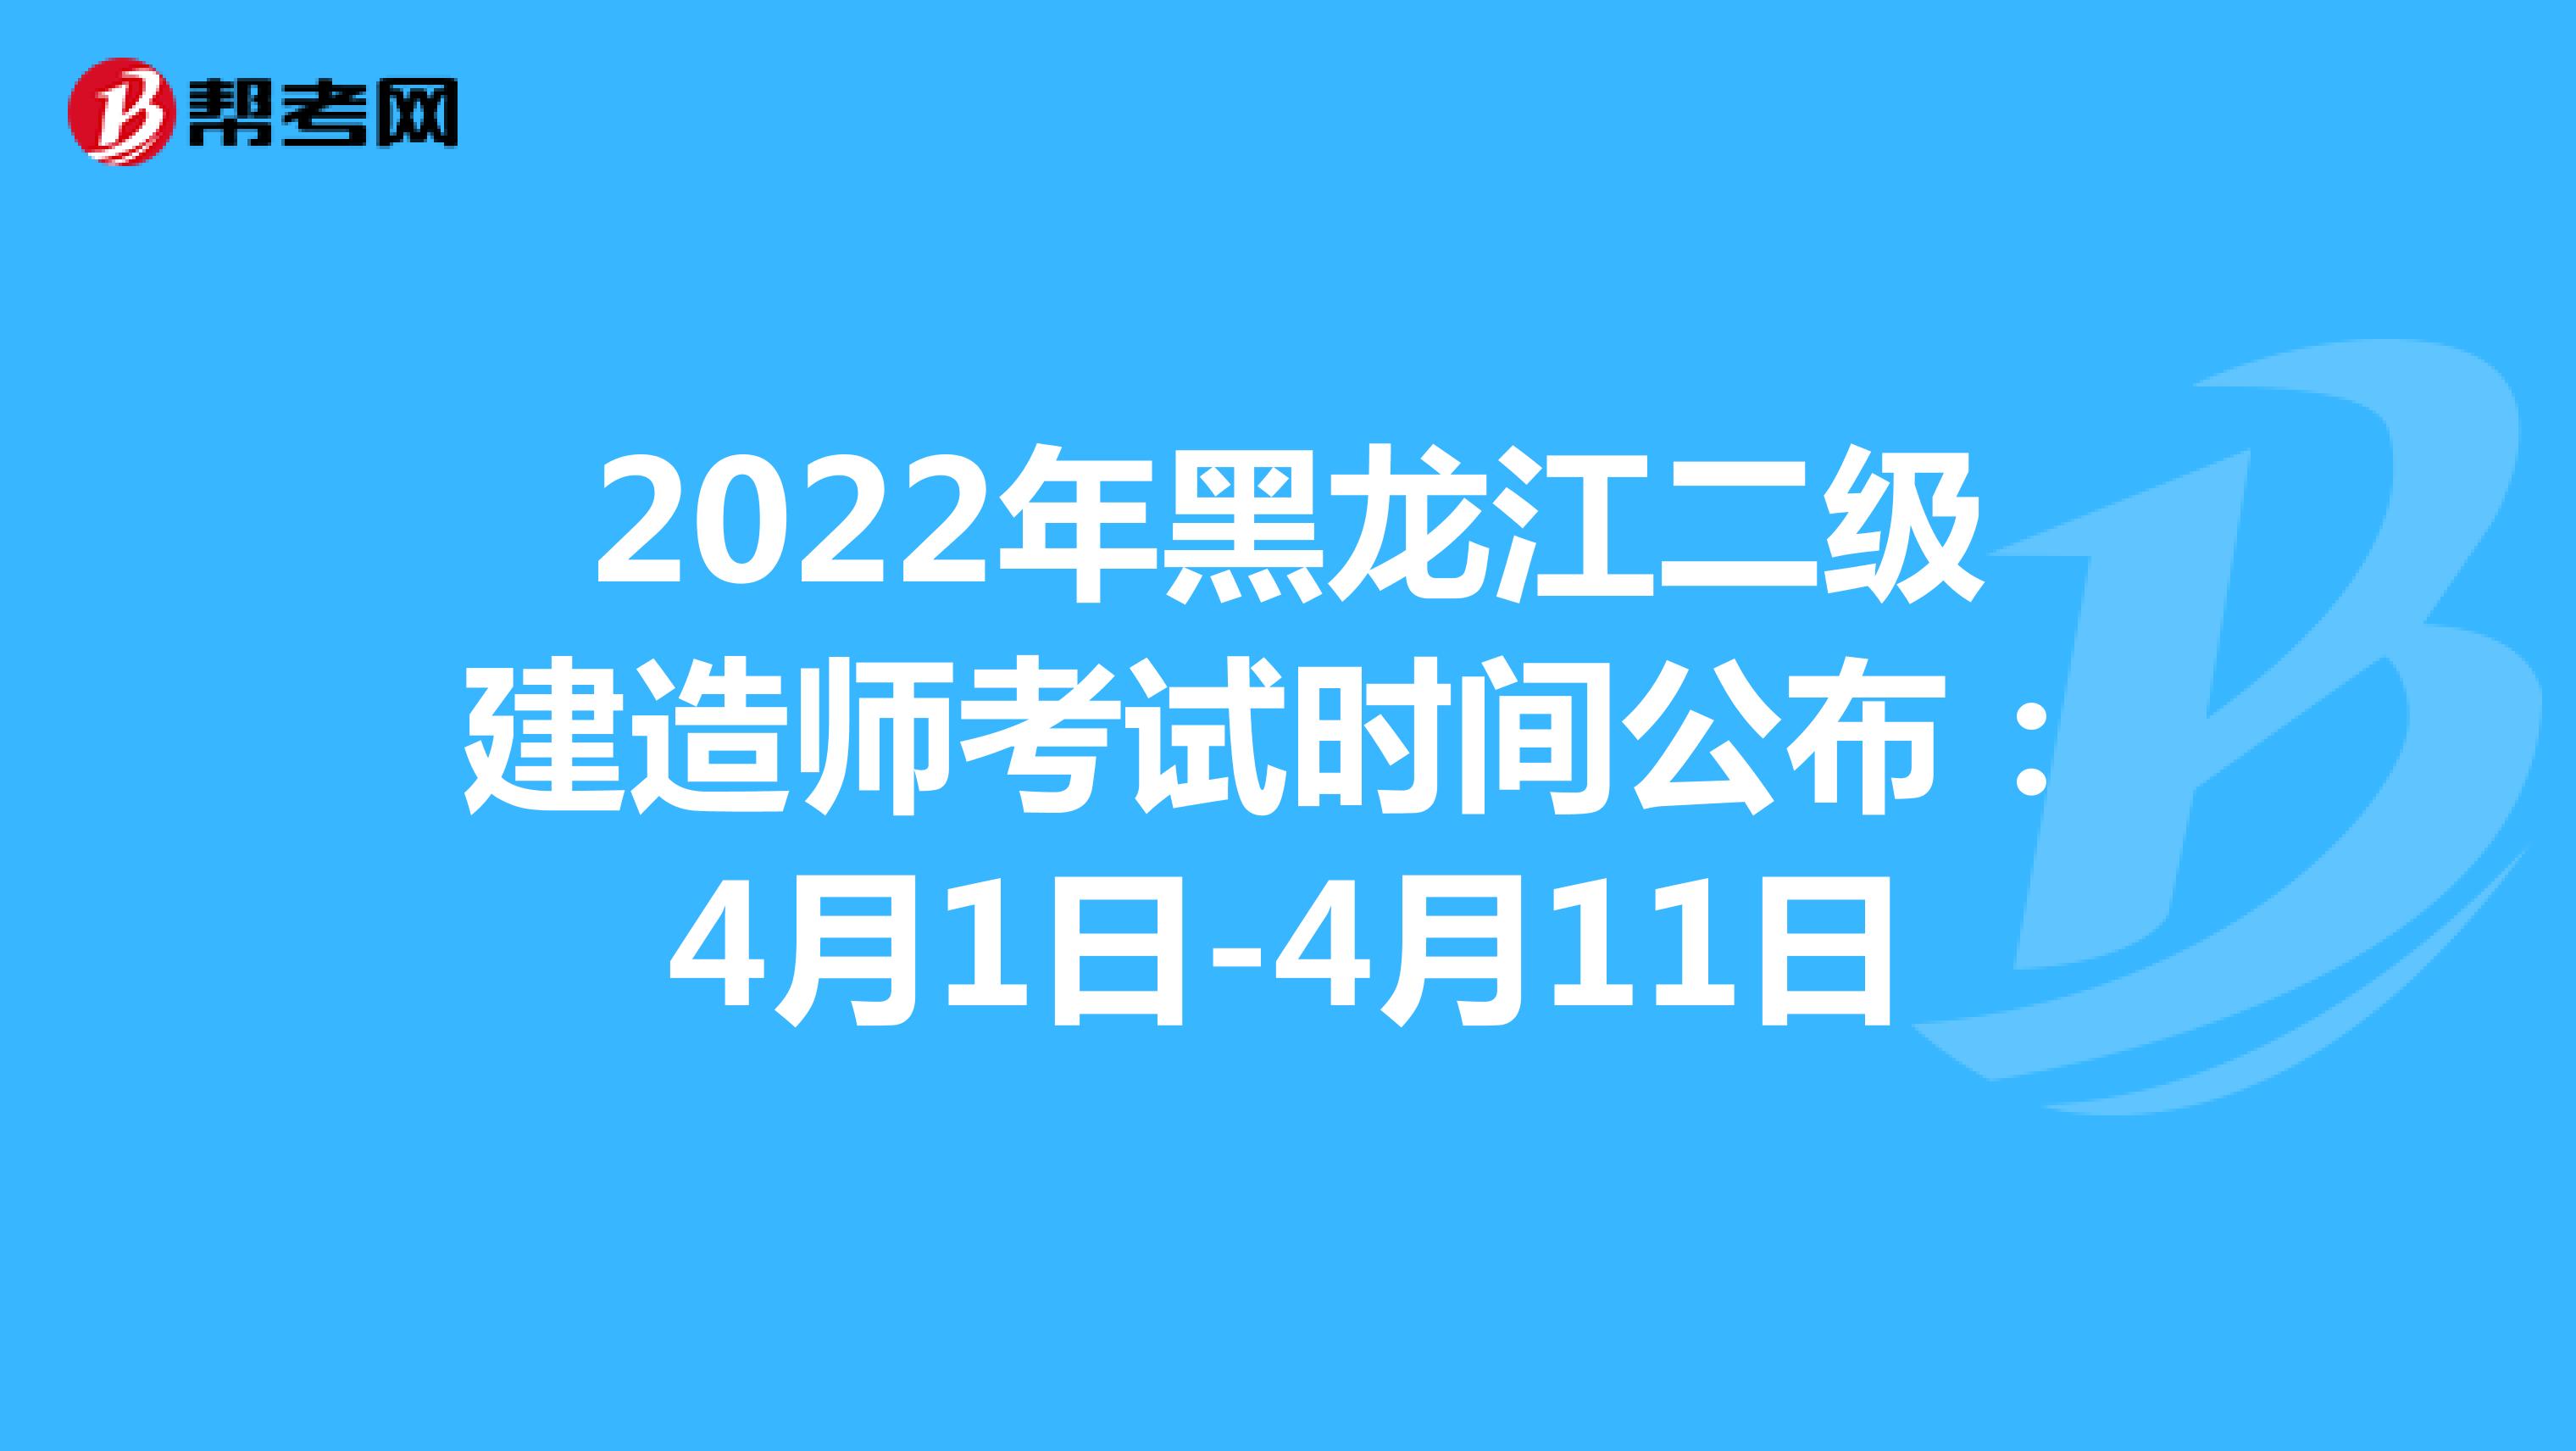 2022年黑龍江二級建造師考試時間公布：4月1日-4月11日